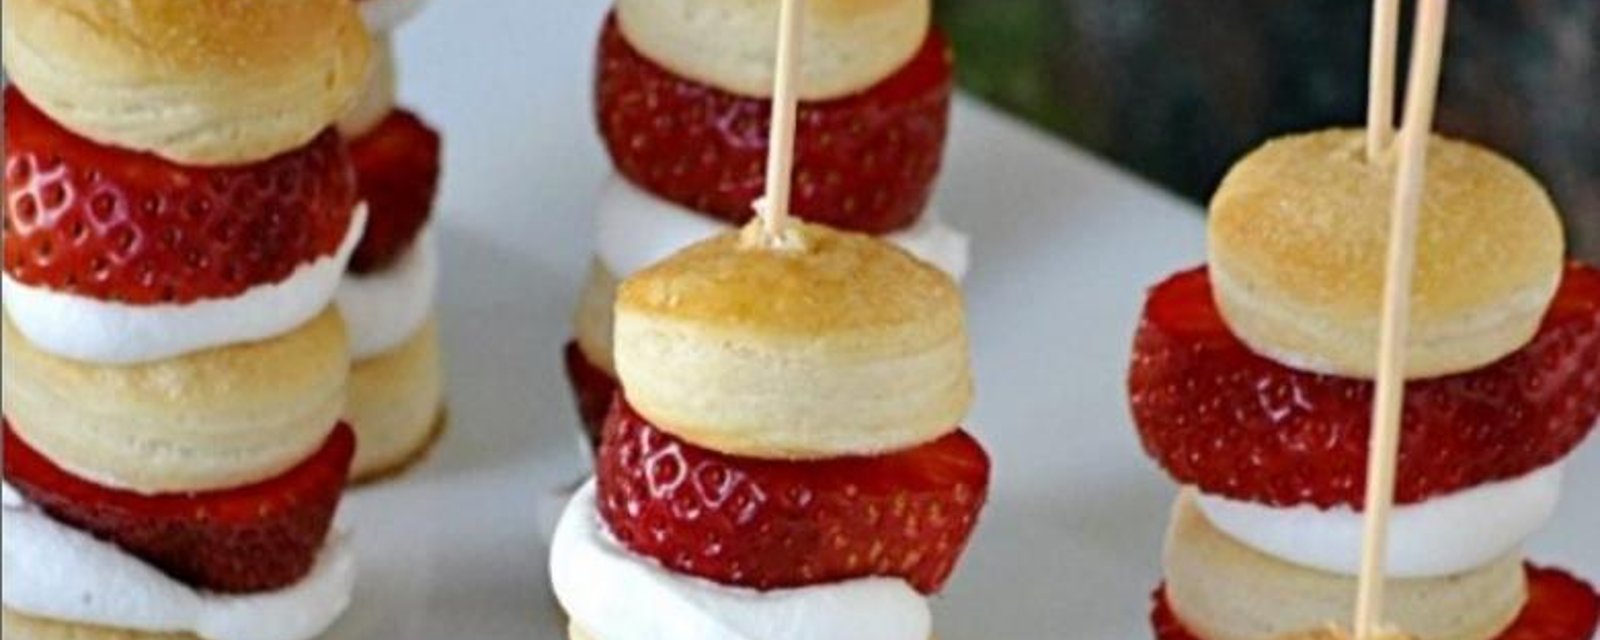 Brochettes de Shortcake aux fraises